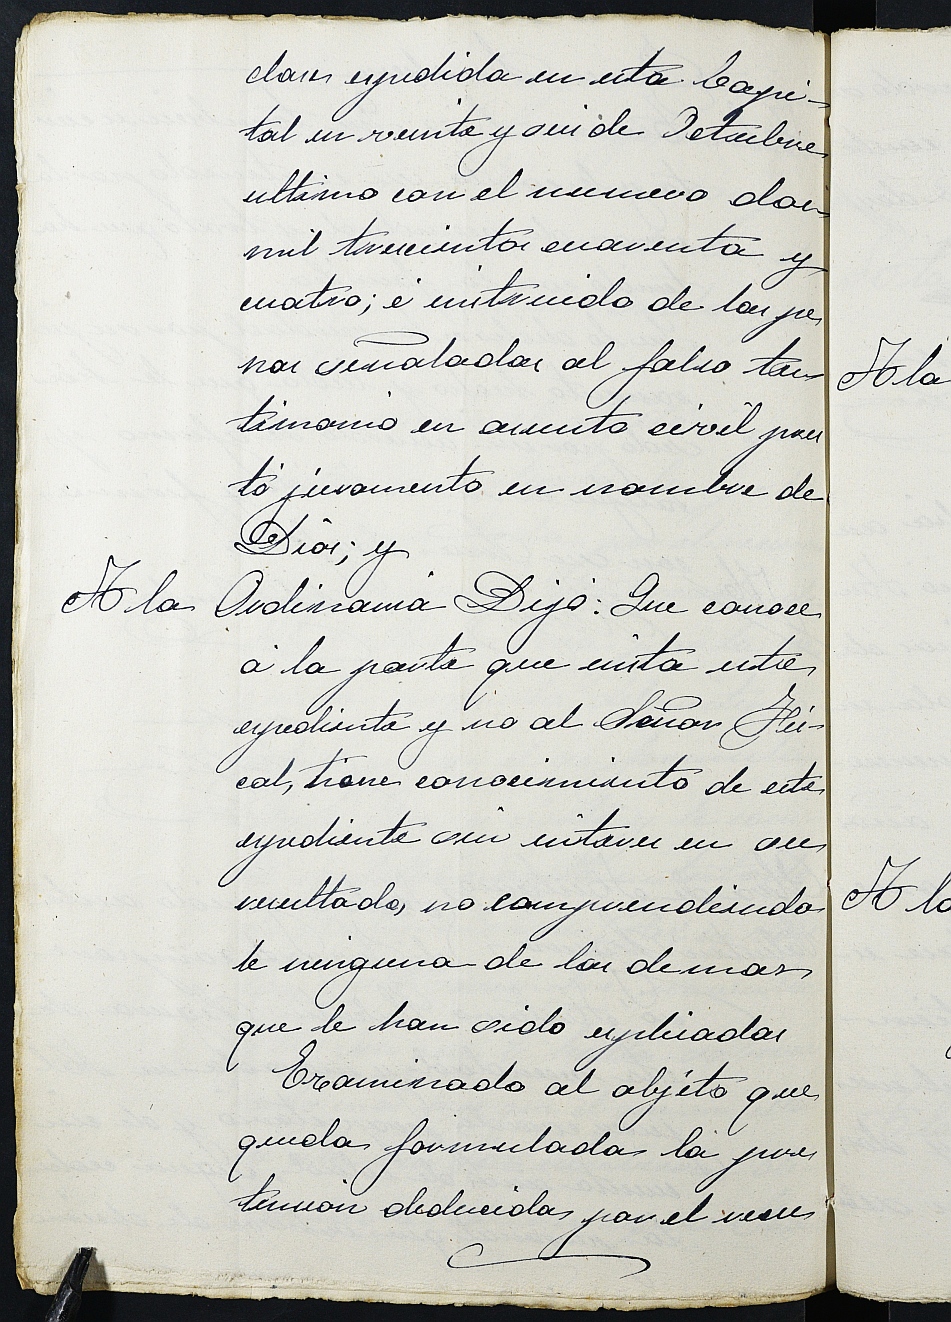 Declaración de herederos s.n./1893 del Juzgado del Distrito de San Juan de Murcia, por defunción de Lucía Faz Cánovas y Antonia Pinar Faz.